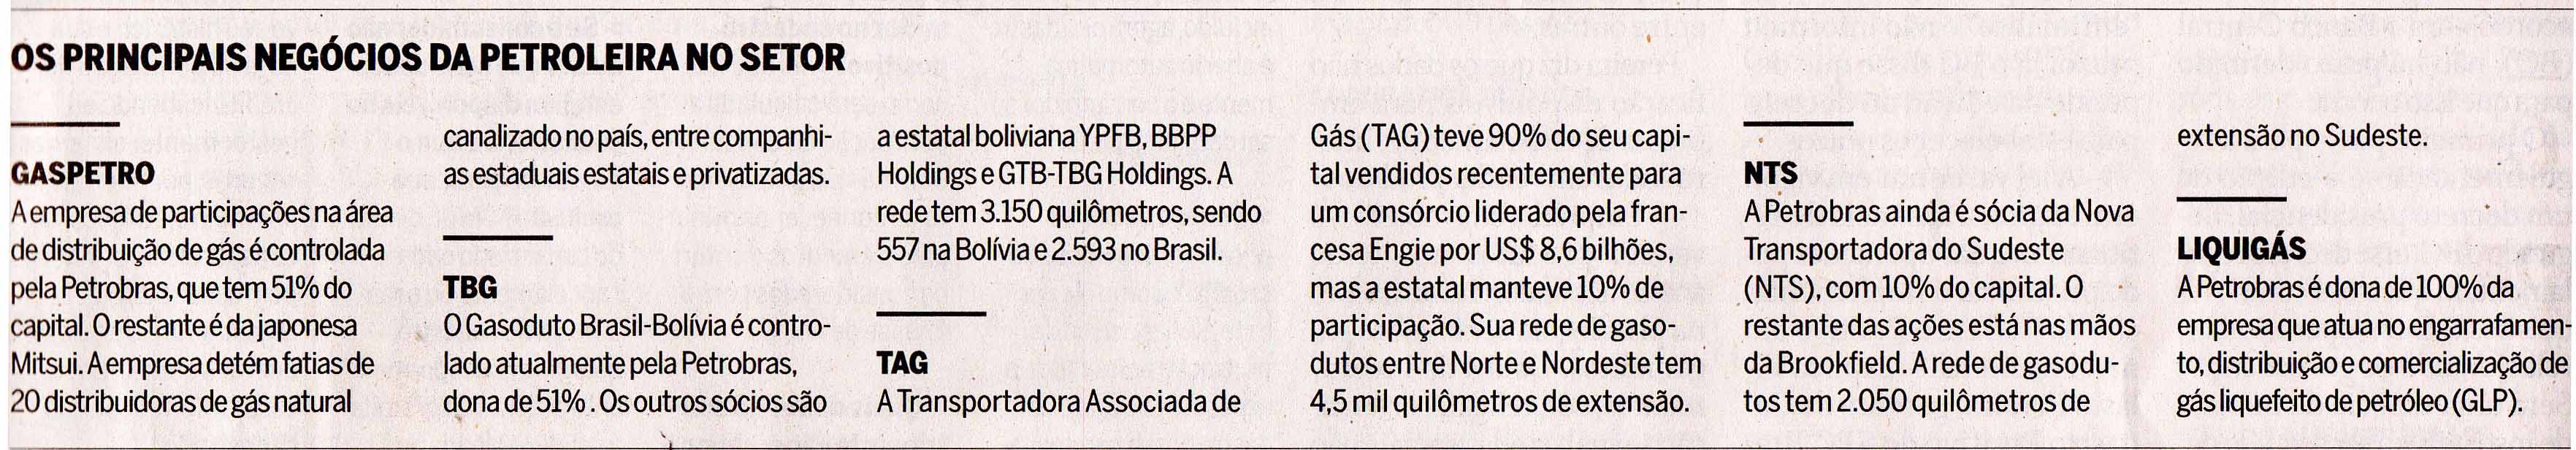 Petrobras-Principais-Negocios